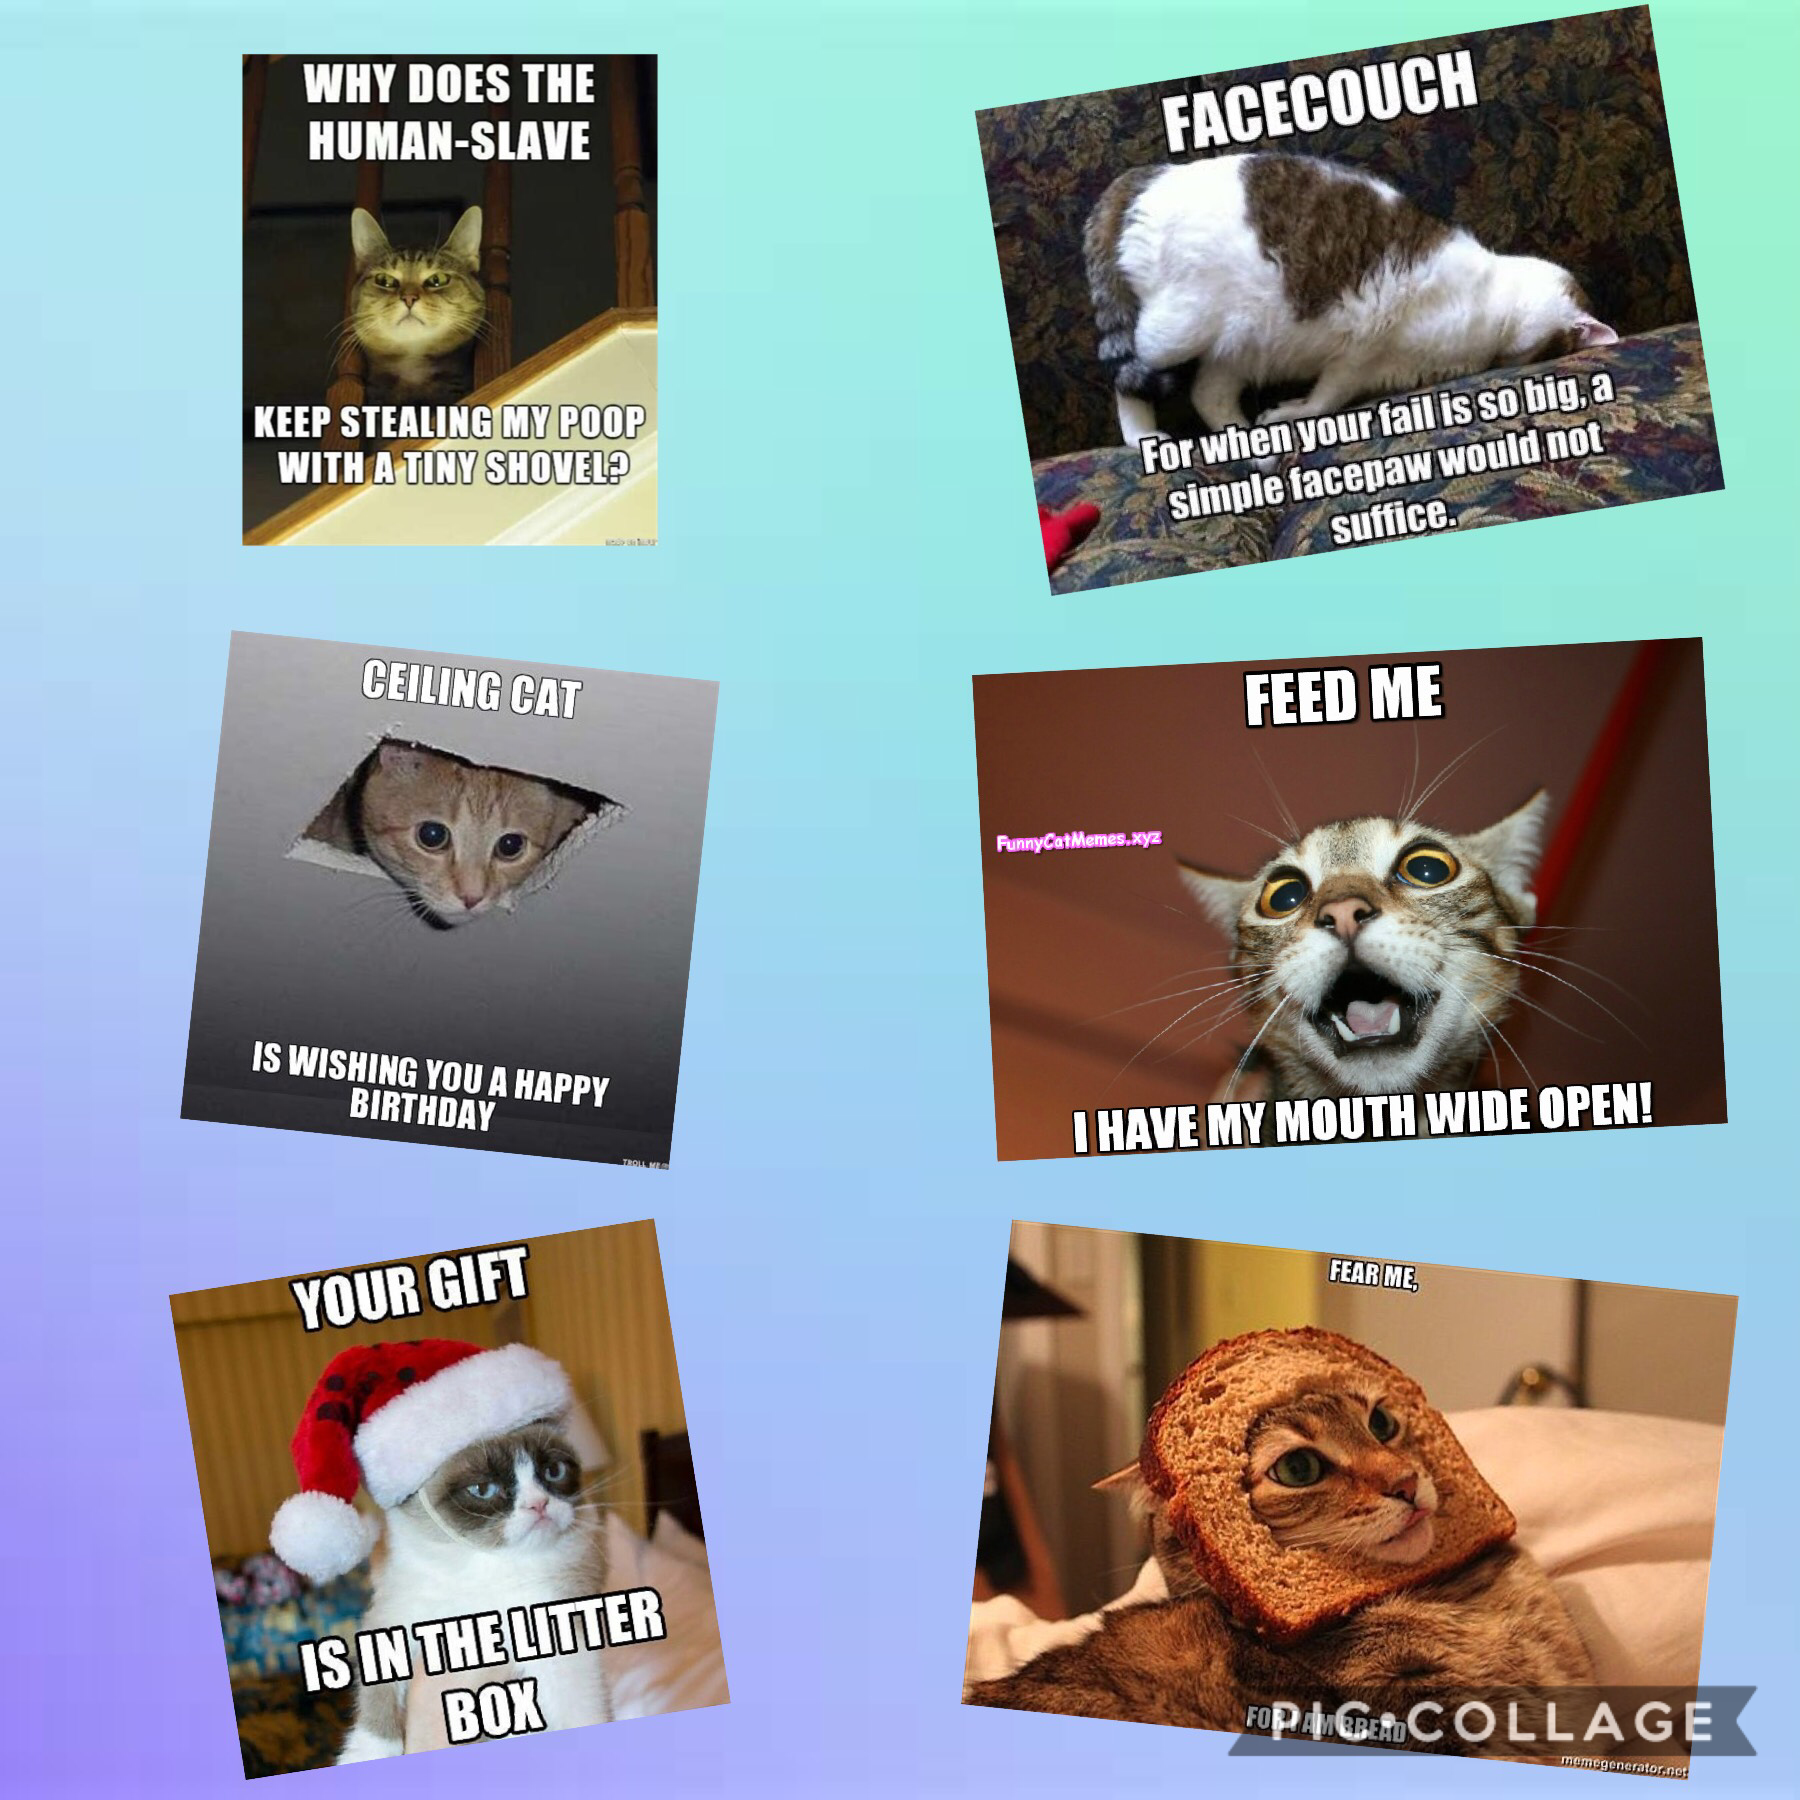 More cat memes!